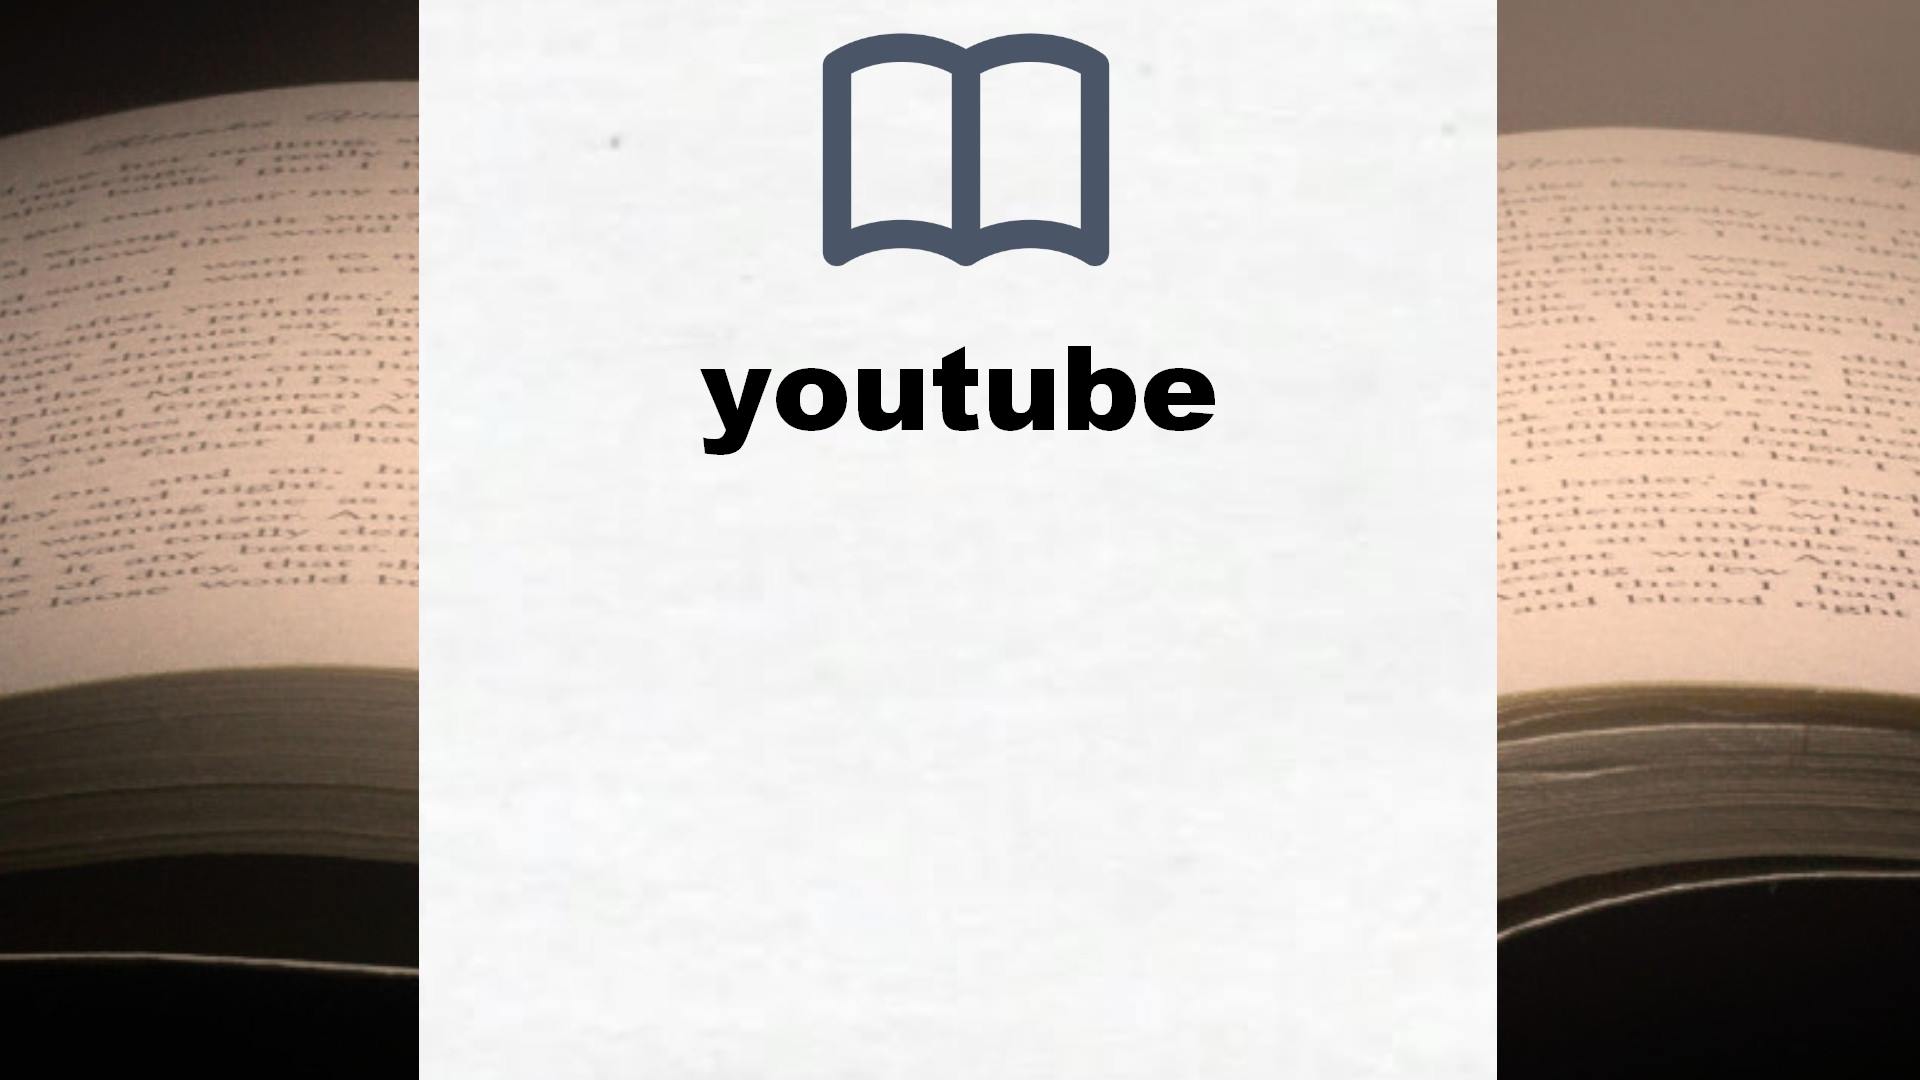 Libros sobre youtube